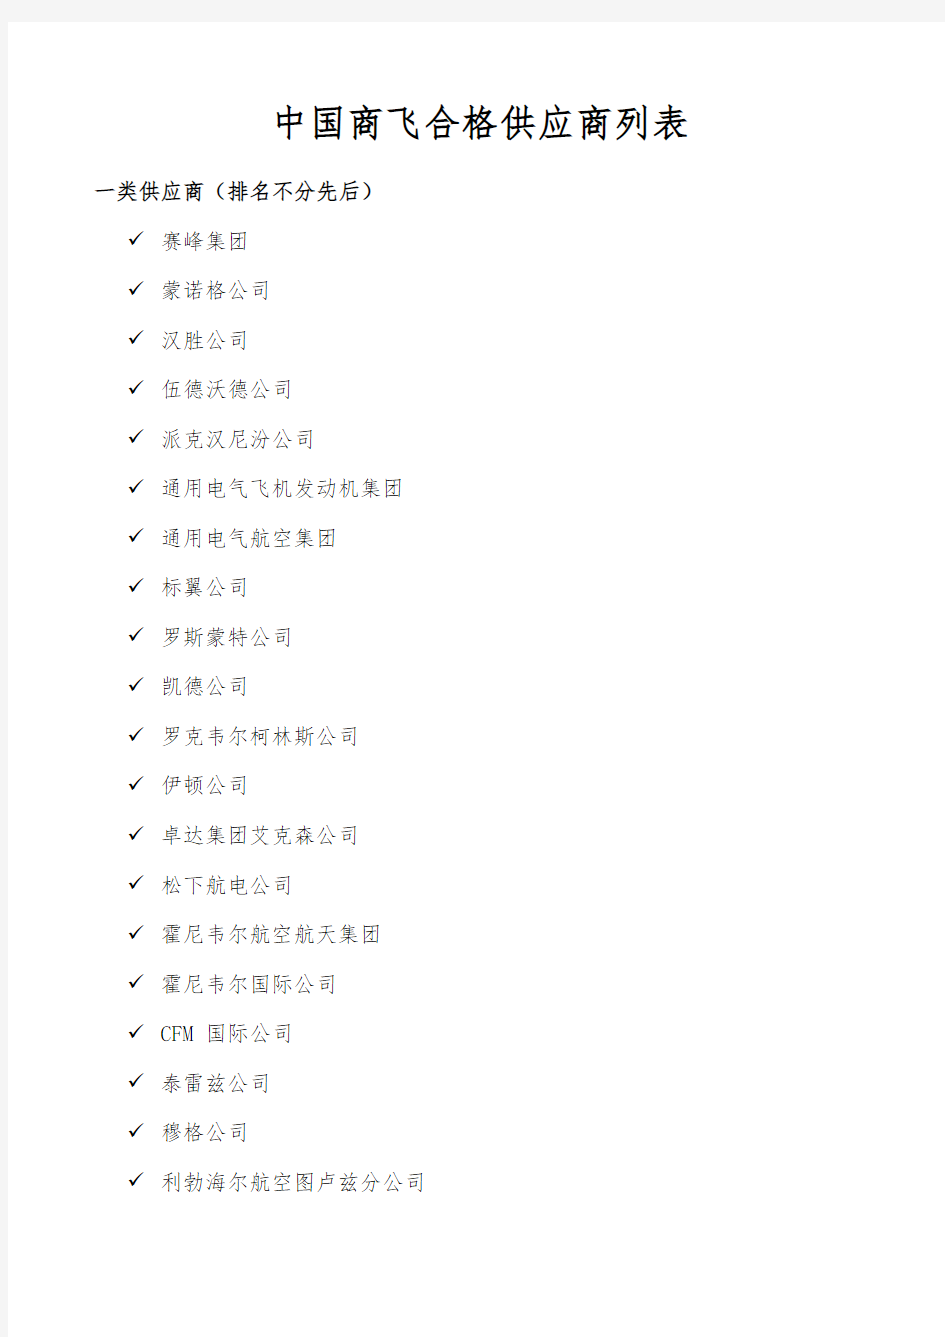 中国商飞合格供应商列表教程文件